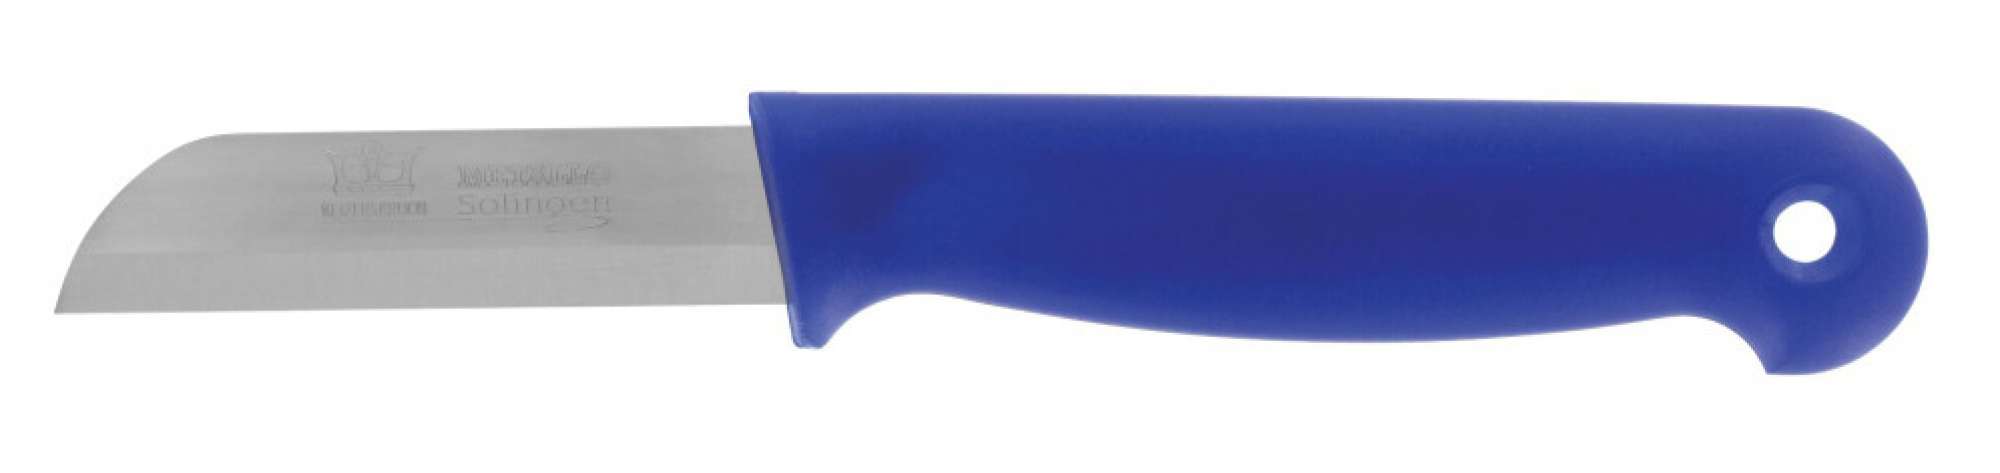 956016-L - Strip steel knives - Keizerskroon Metallo